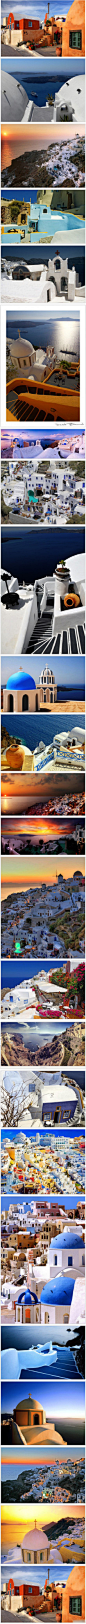 圣托里尼岛（Santorini）—— 爱琴海最璀璨的一颗明珠，柏拉图笔下的自由之地， 世界上最美的日落，最壮阔的海景！